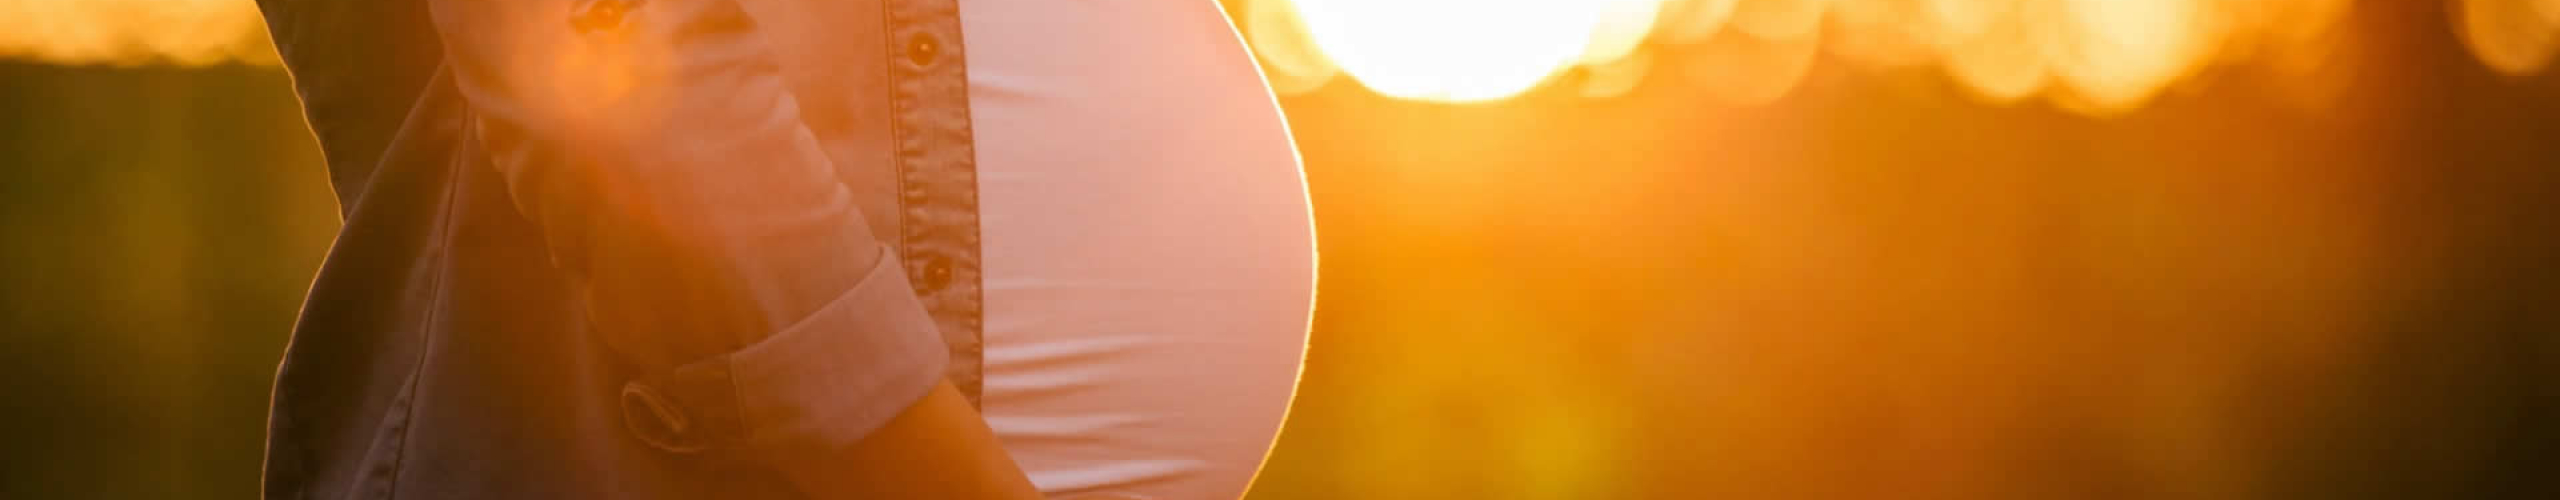 Healthy Pregnancies Promote Healthy Babies